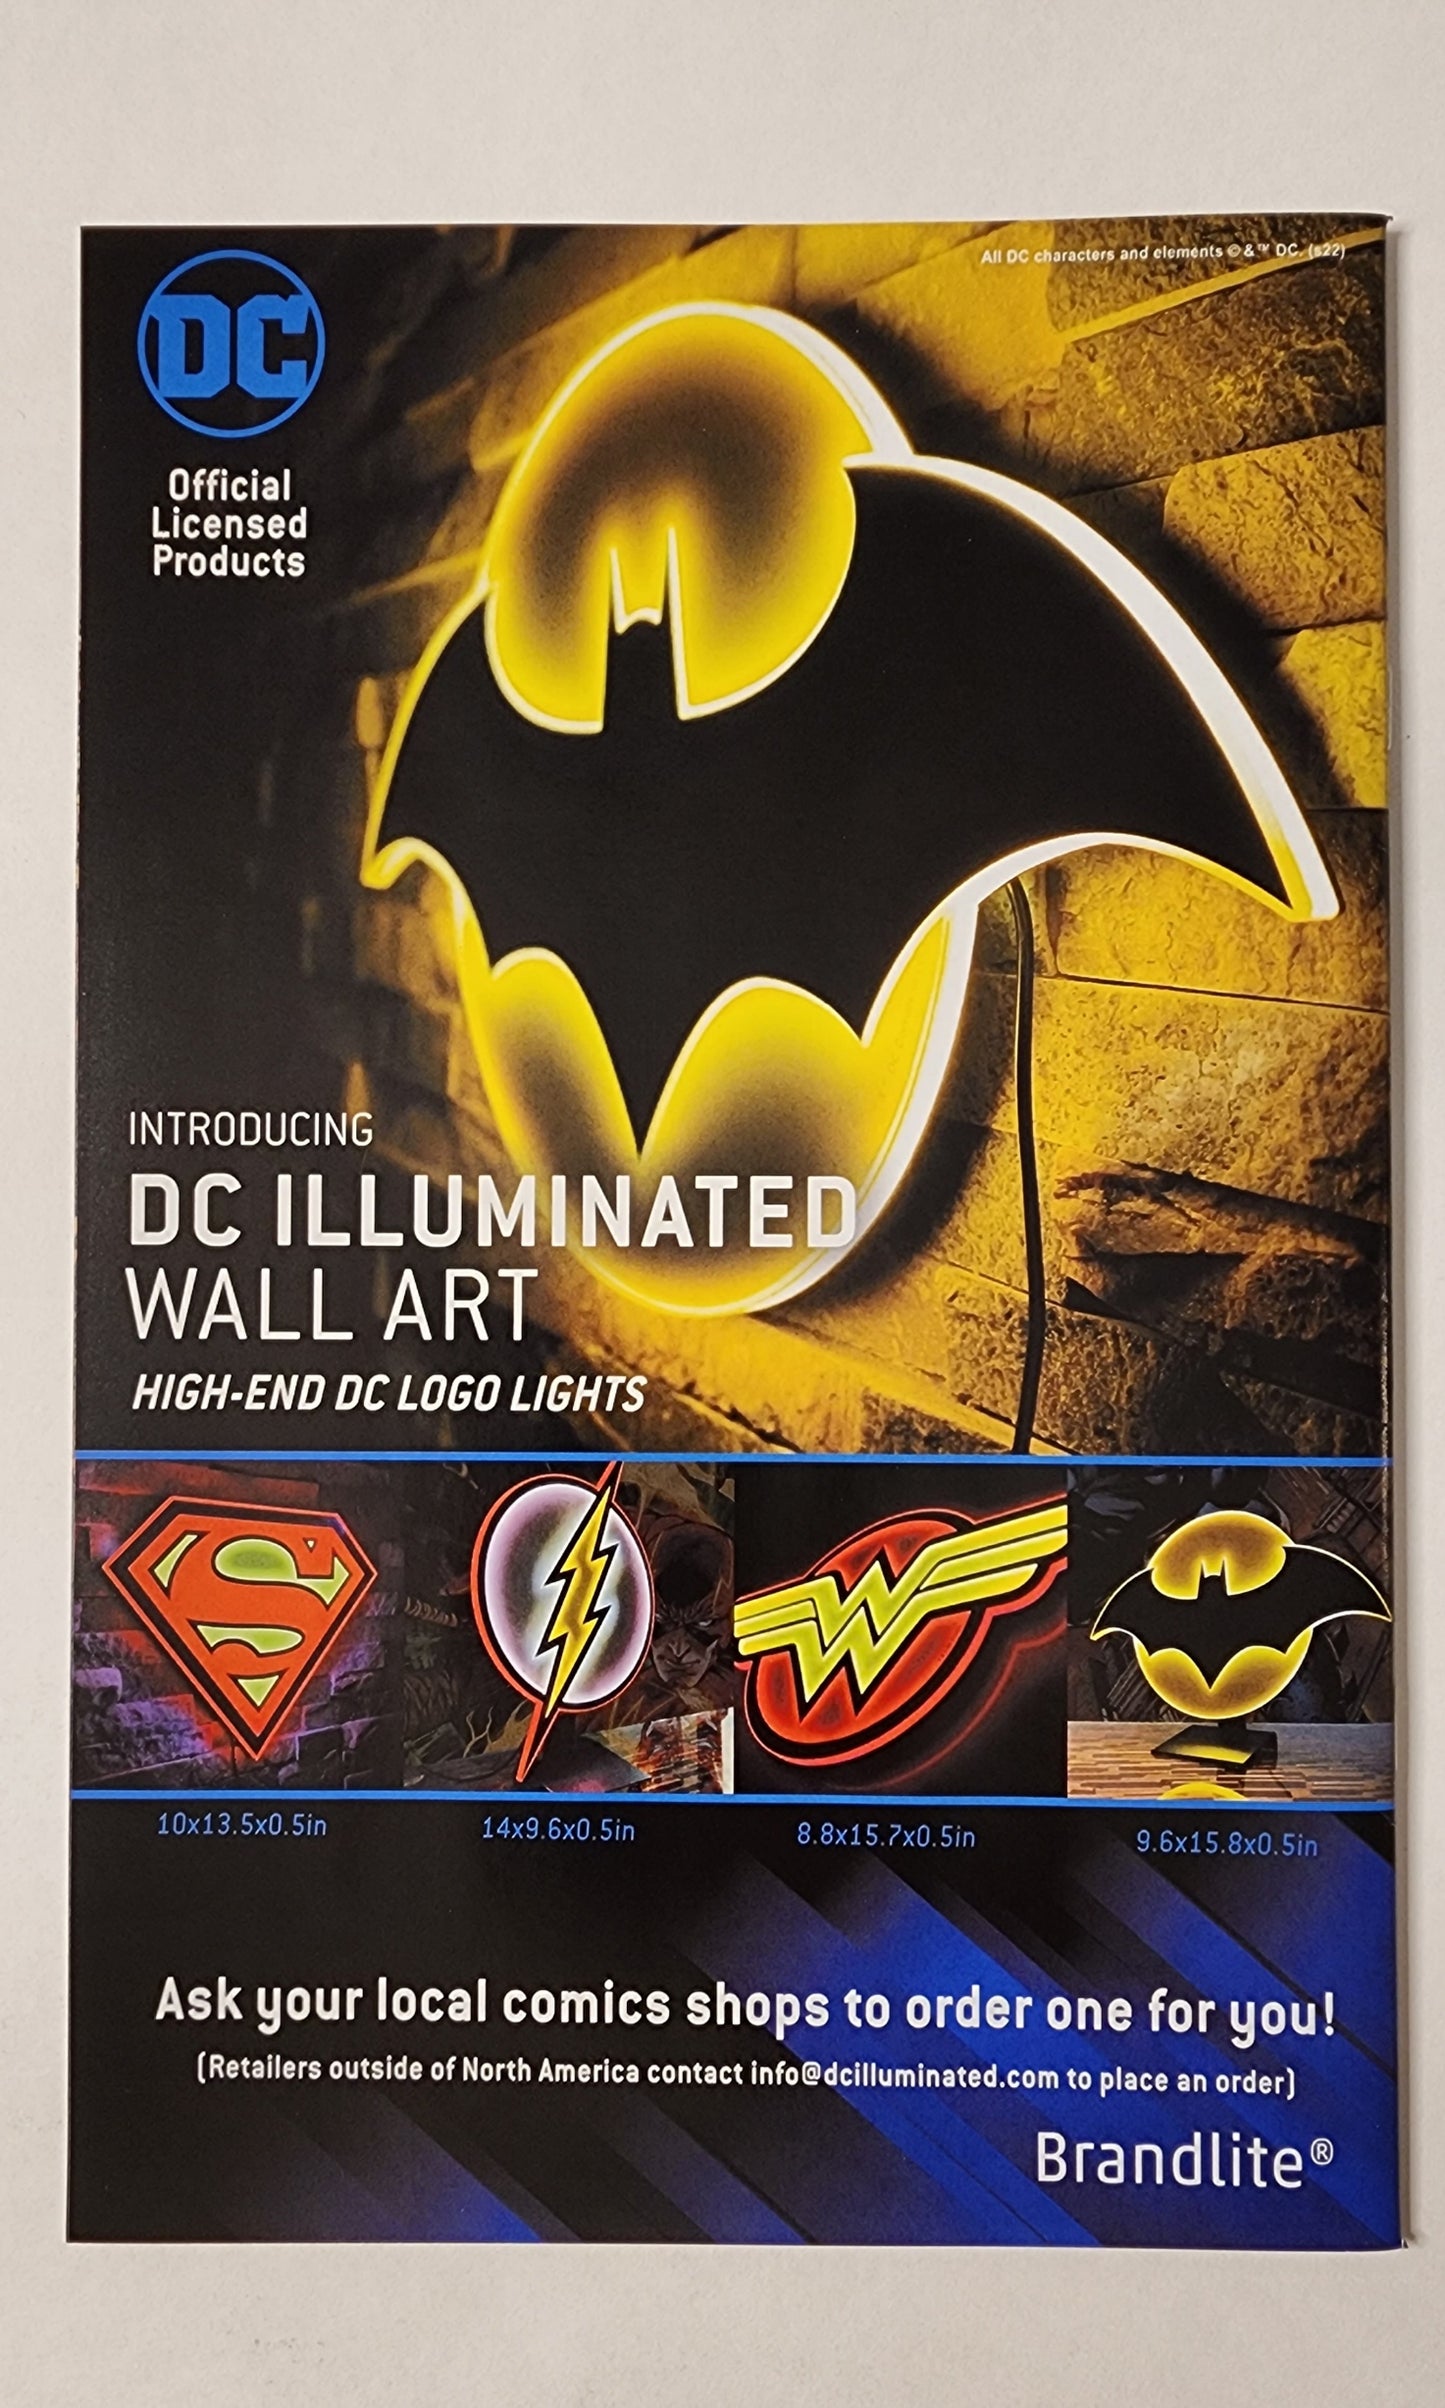 Batman (Vol. 3) #127 (NM)